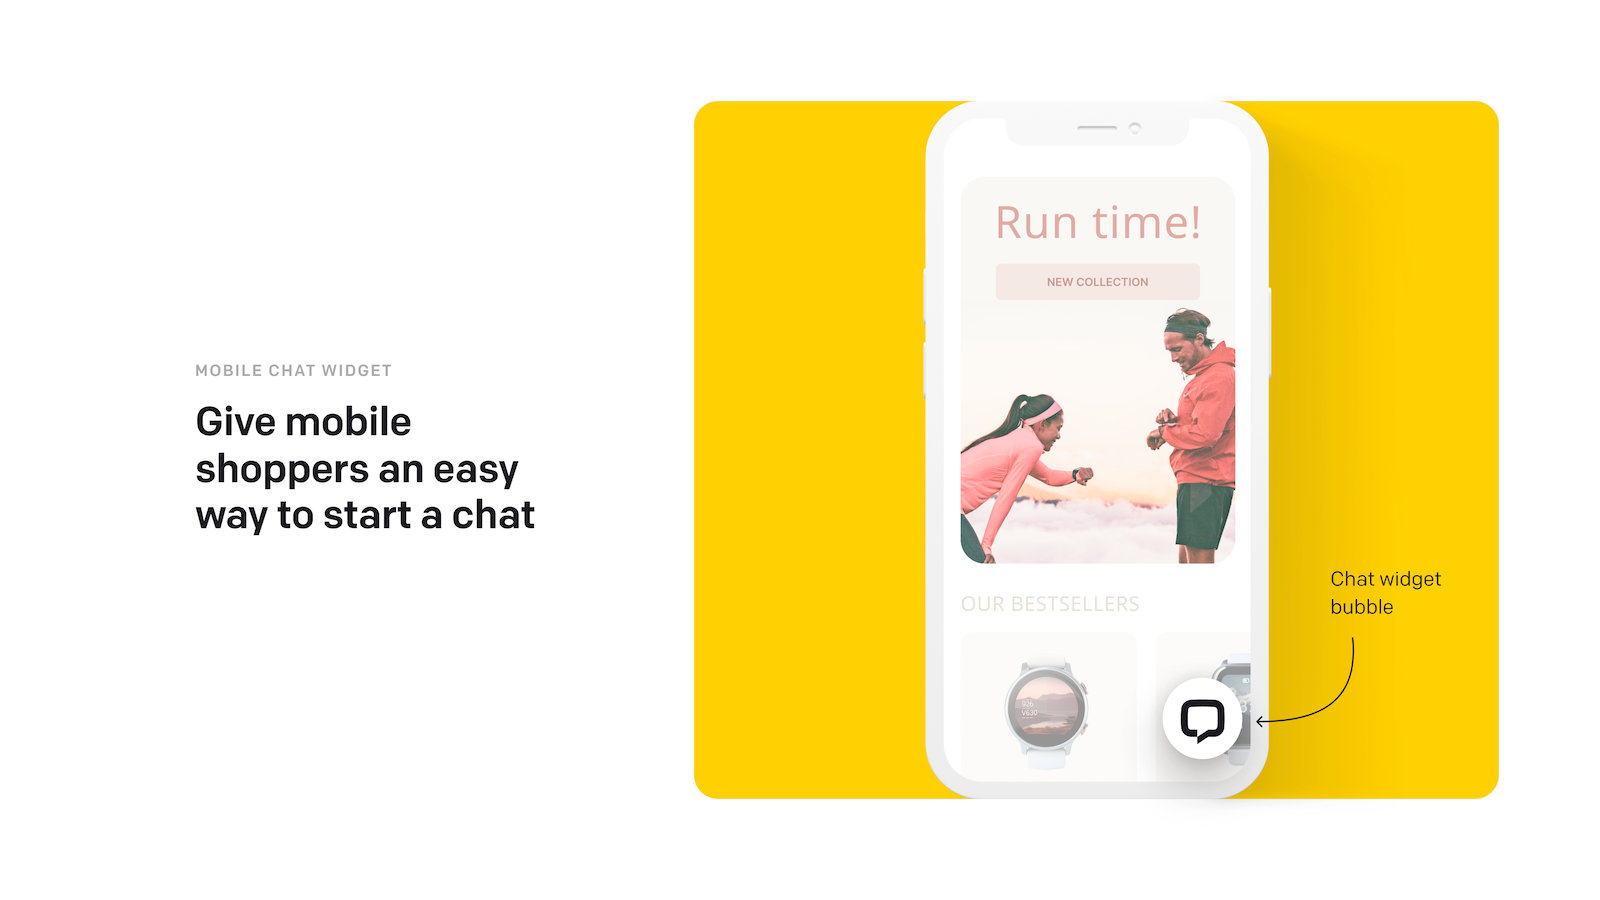 En chat widget boble mobile shoppere kan bruge til at starte en chat.